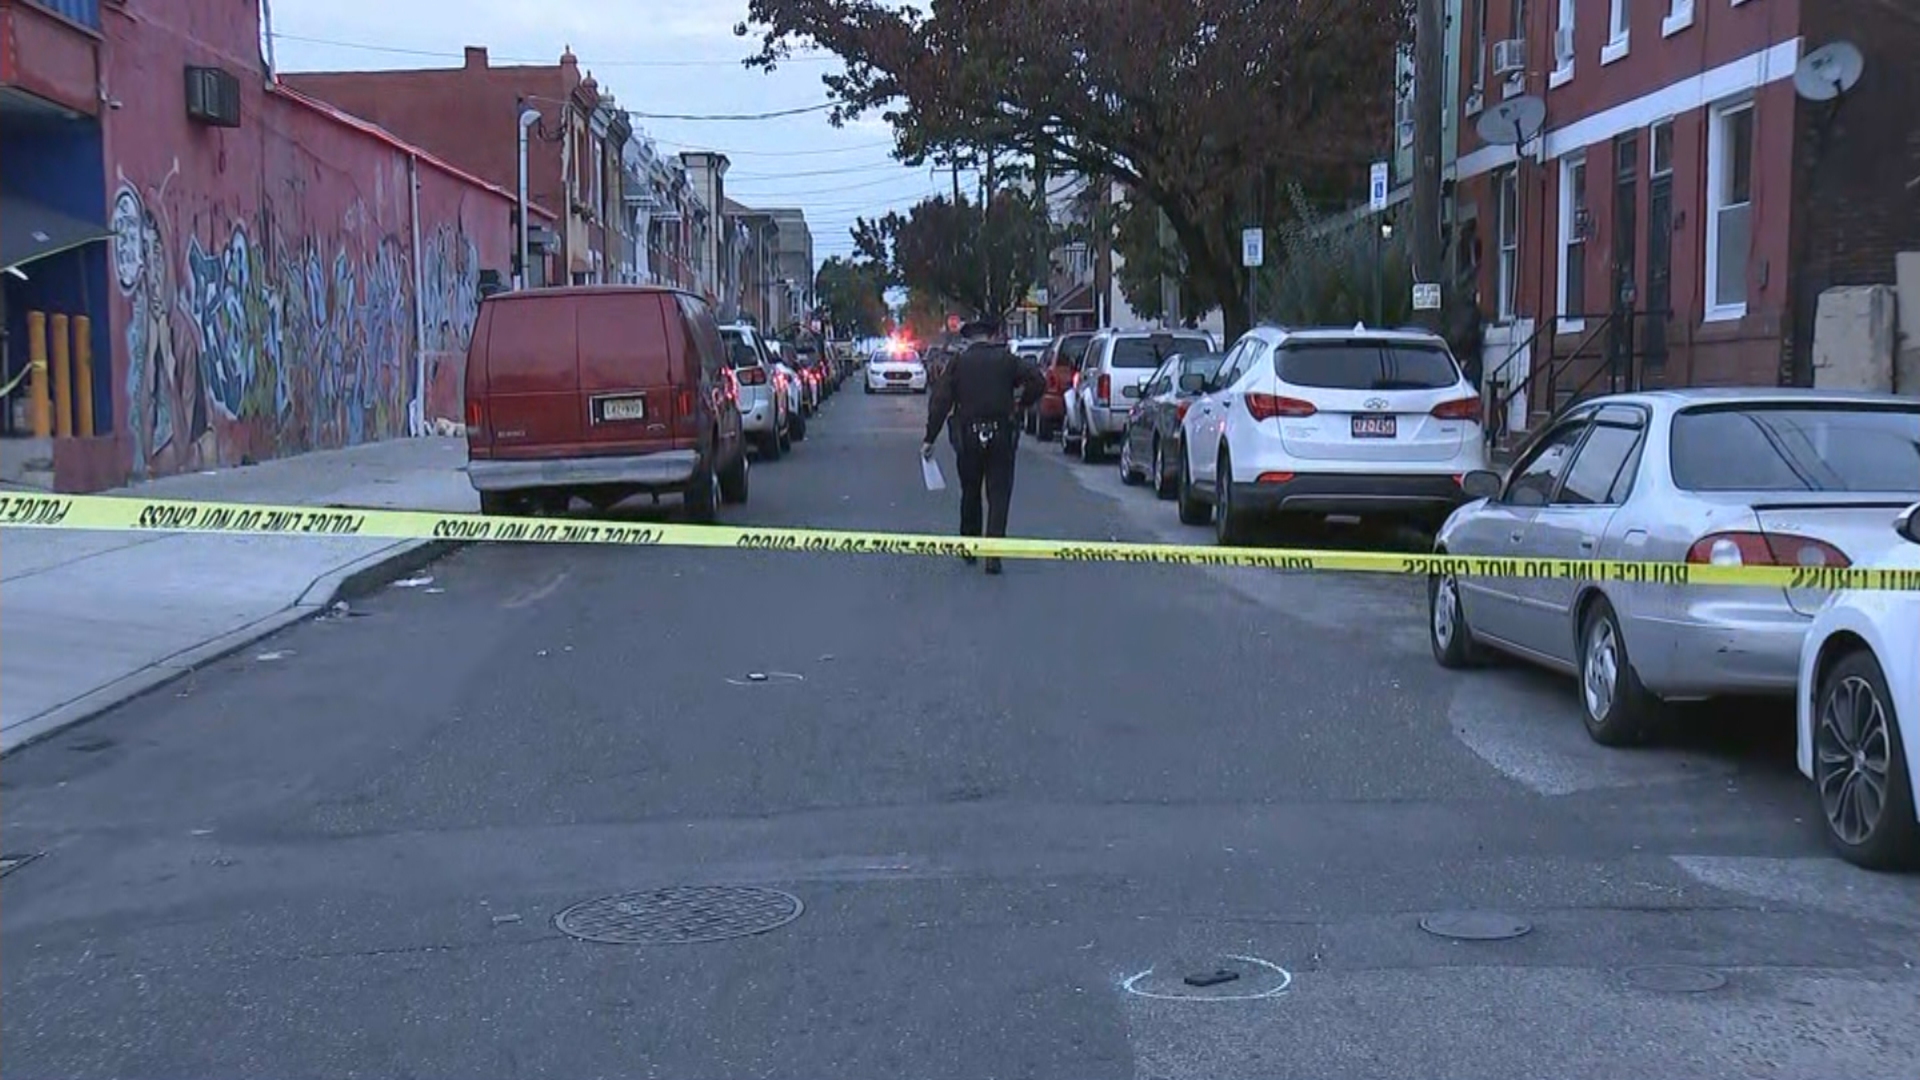 Police: 6 People Shot In Philadelphia's Kensington Section